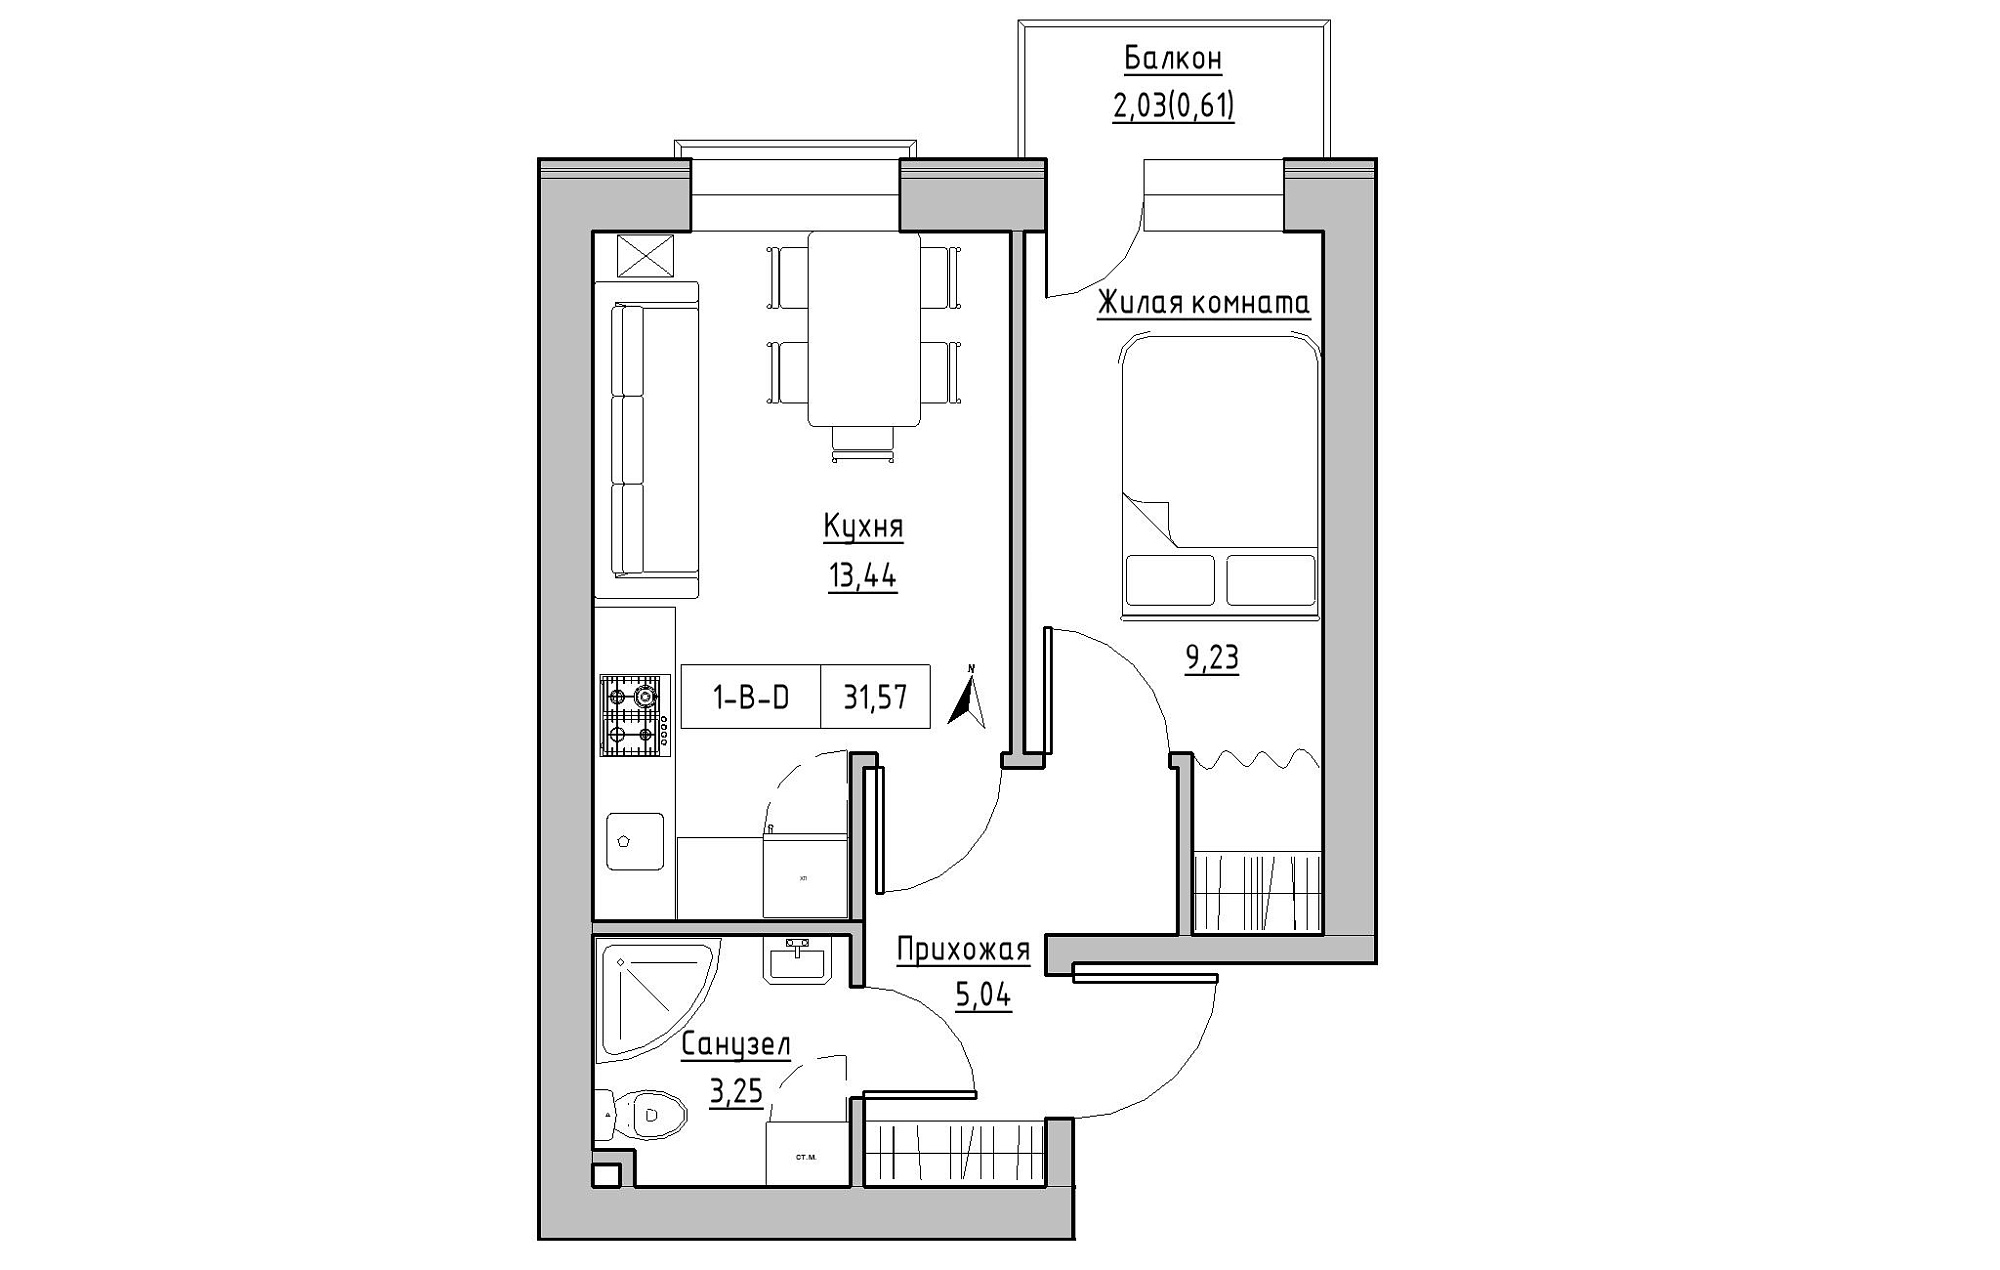 Планировка 1-к квартира площей 31.57м2, KS-019-03/0013.